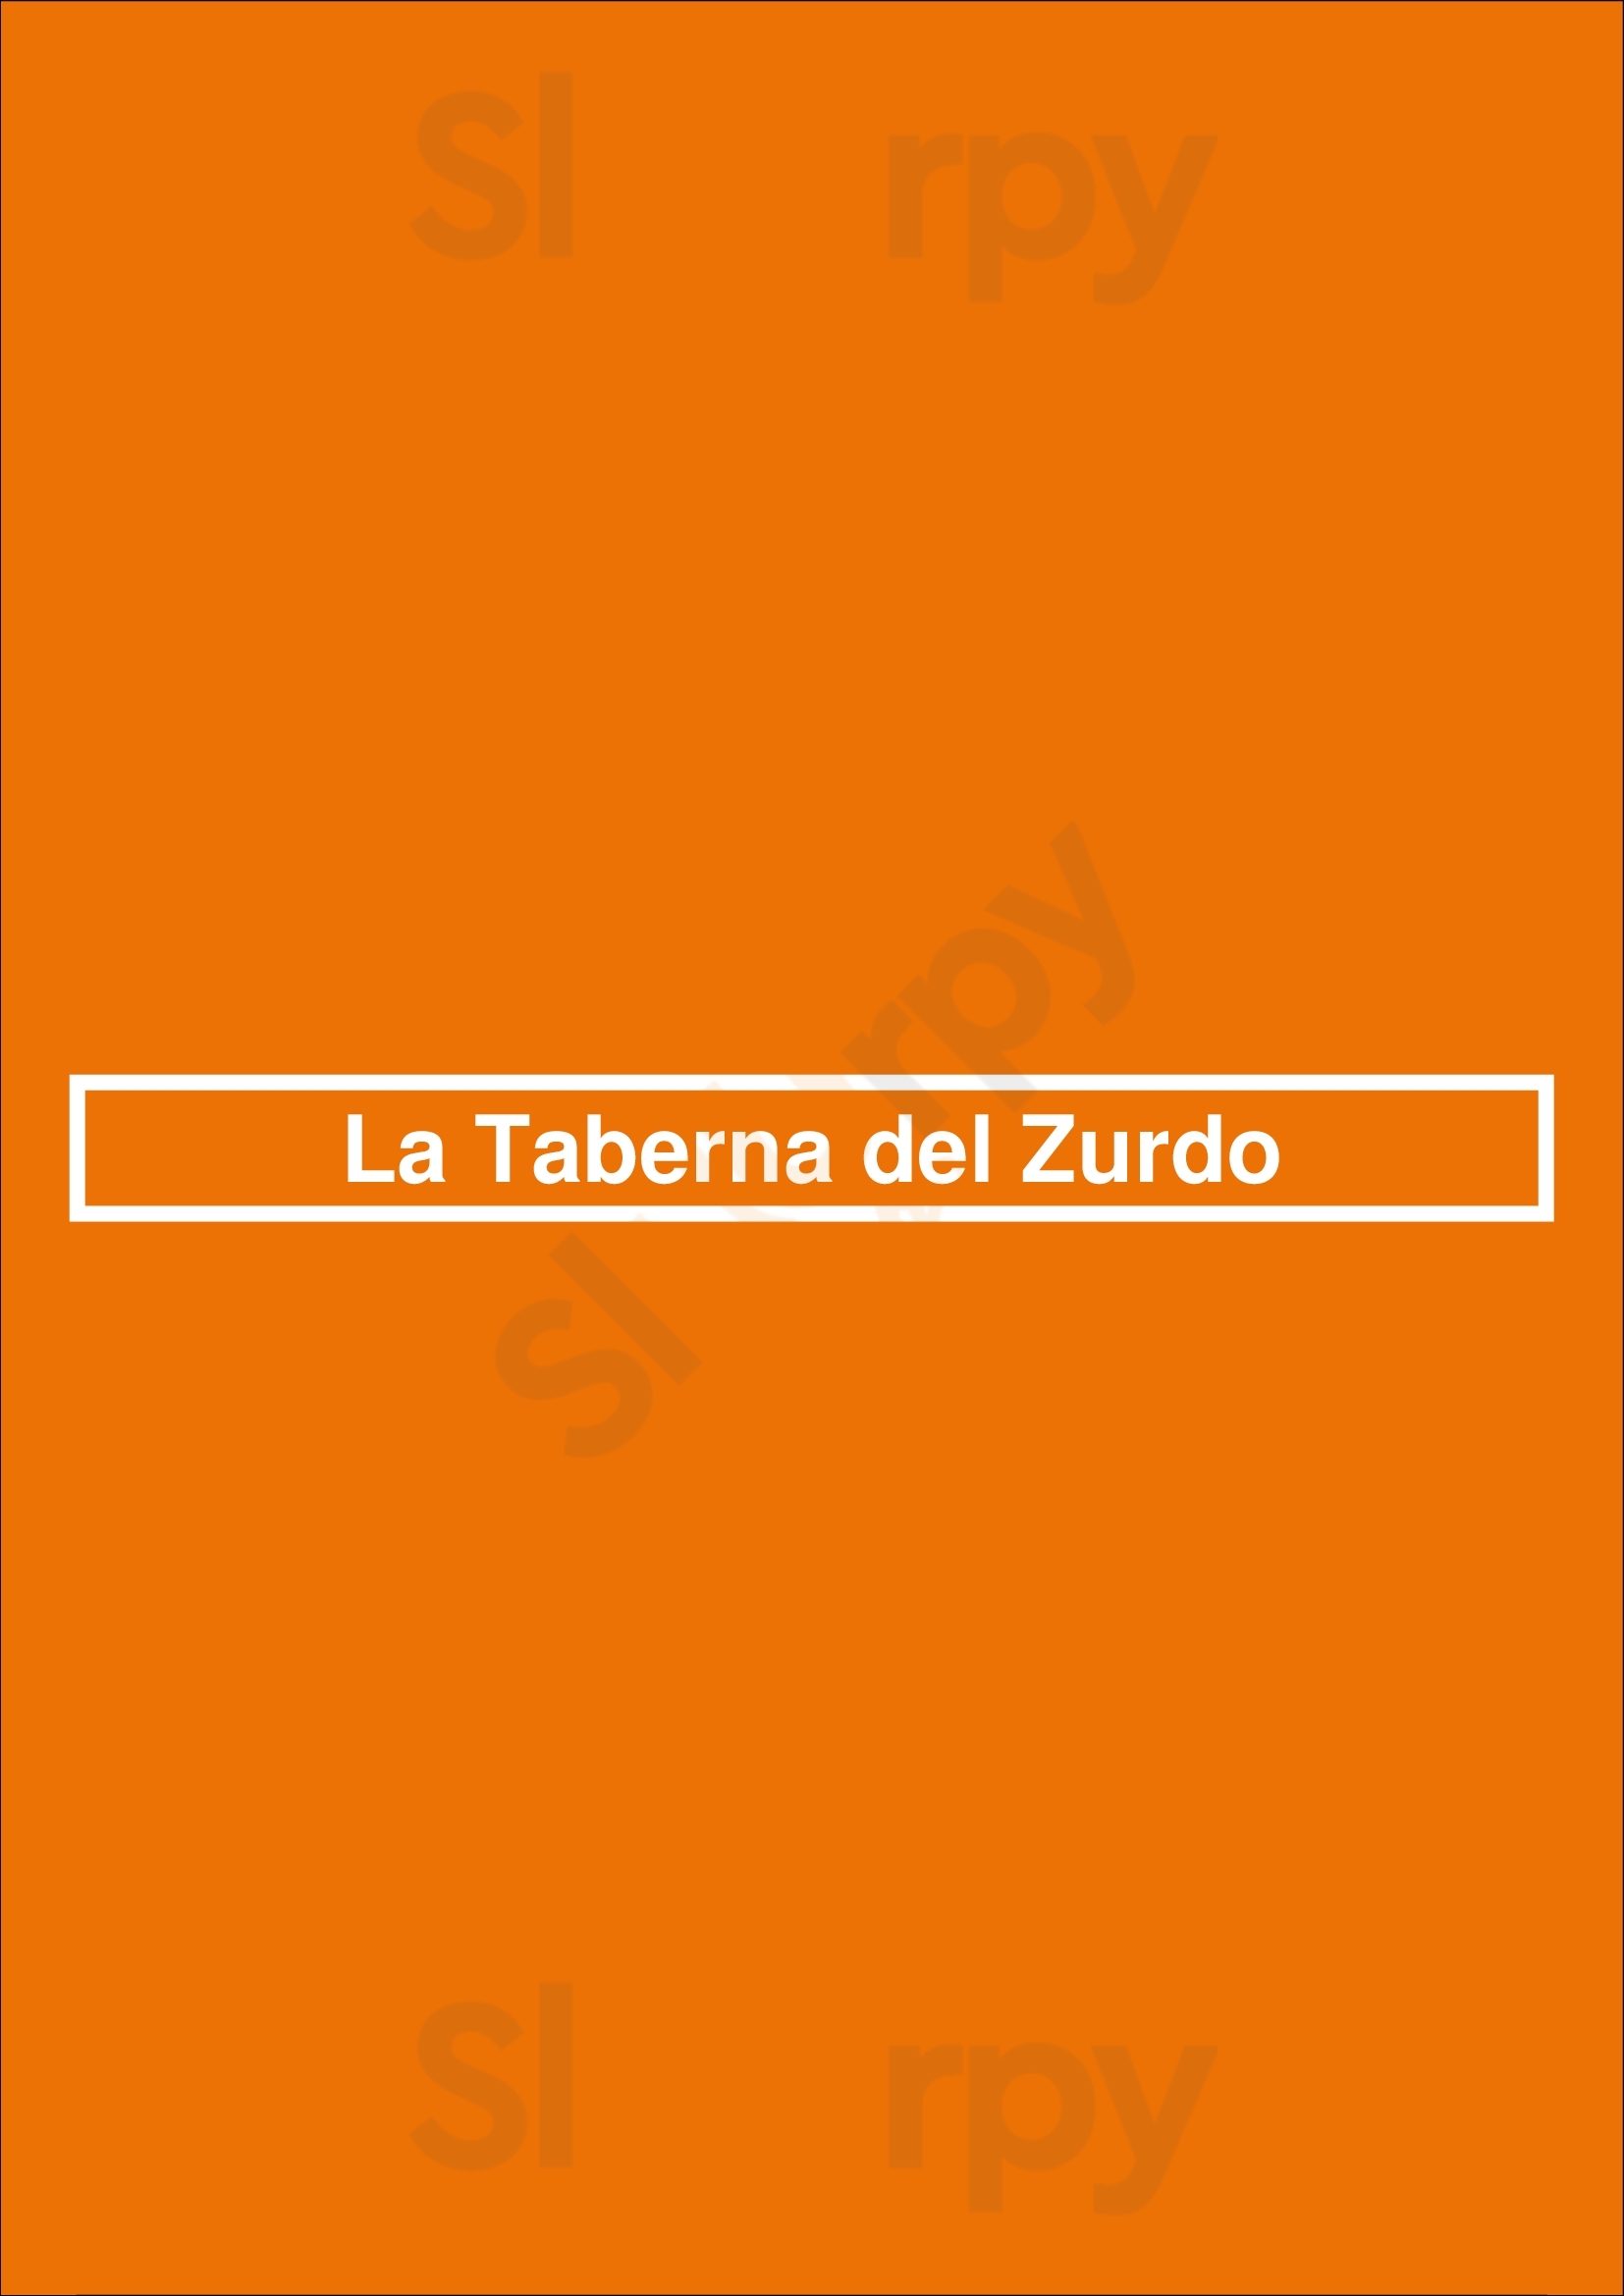 La Taberna Del Zurdo Oviedo Menu - 1